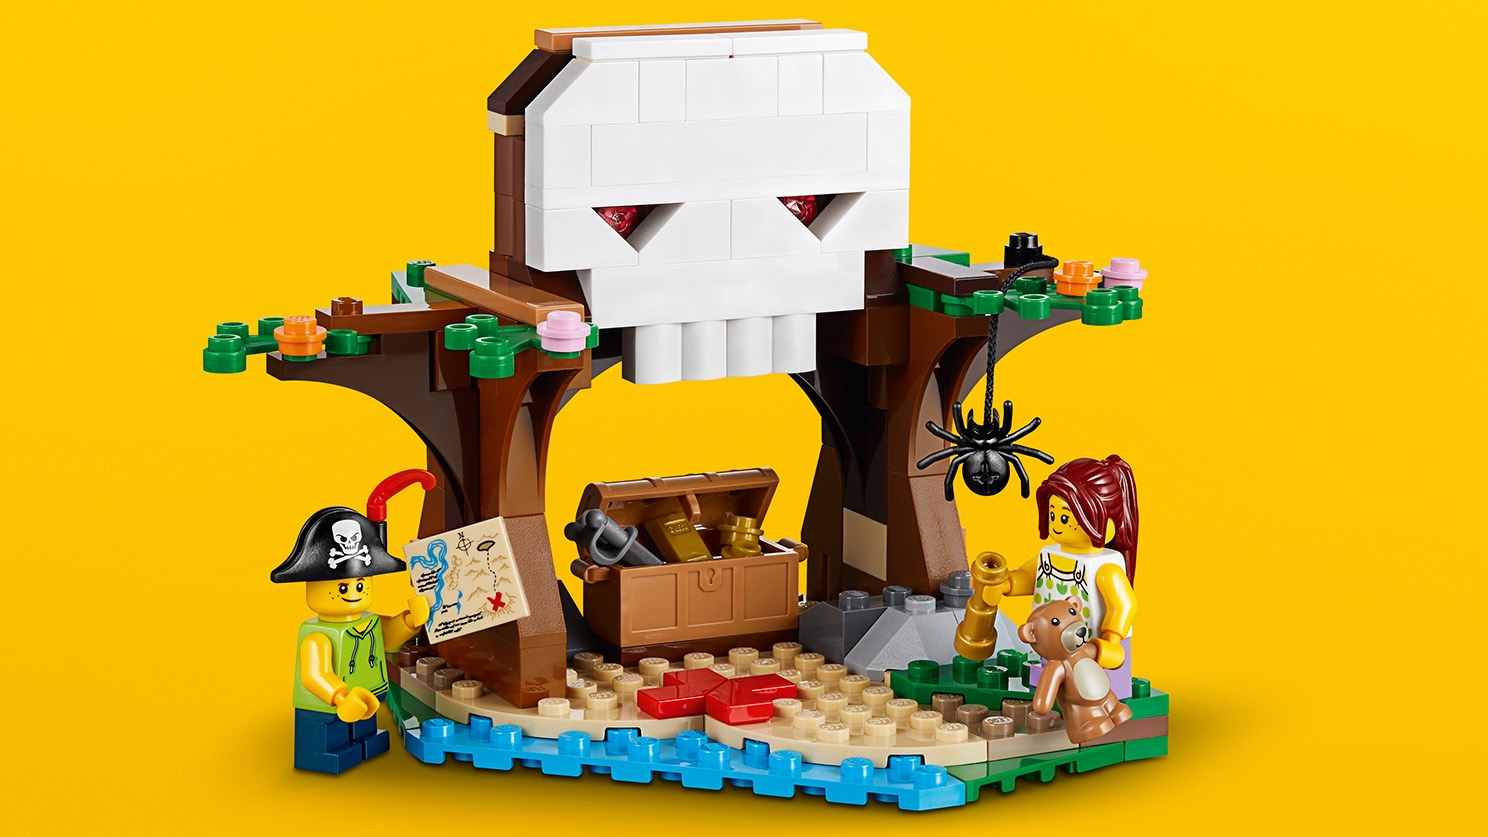 ツリーハウス 31078 - レゴ®クリエイターセット - LEGO.comキッズ